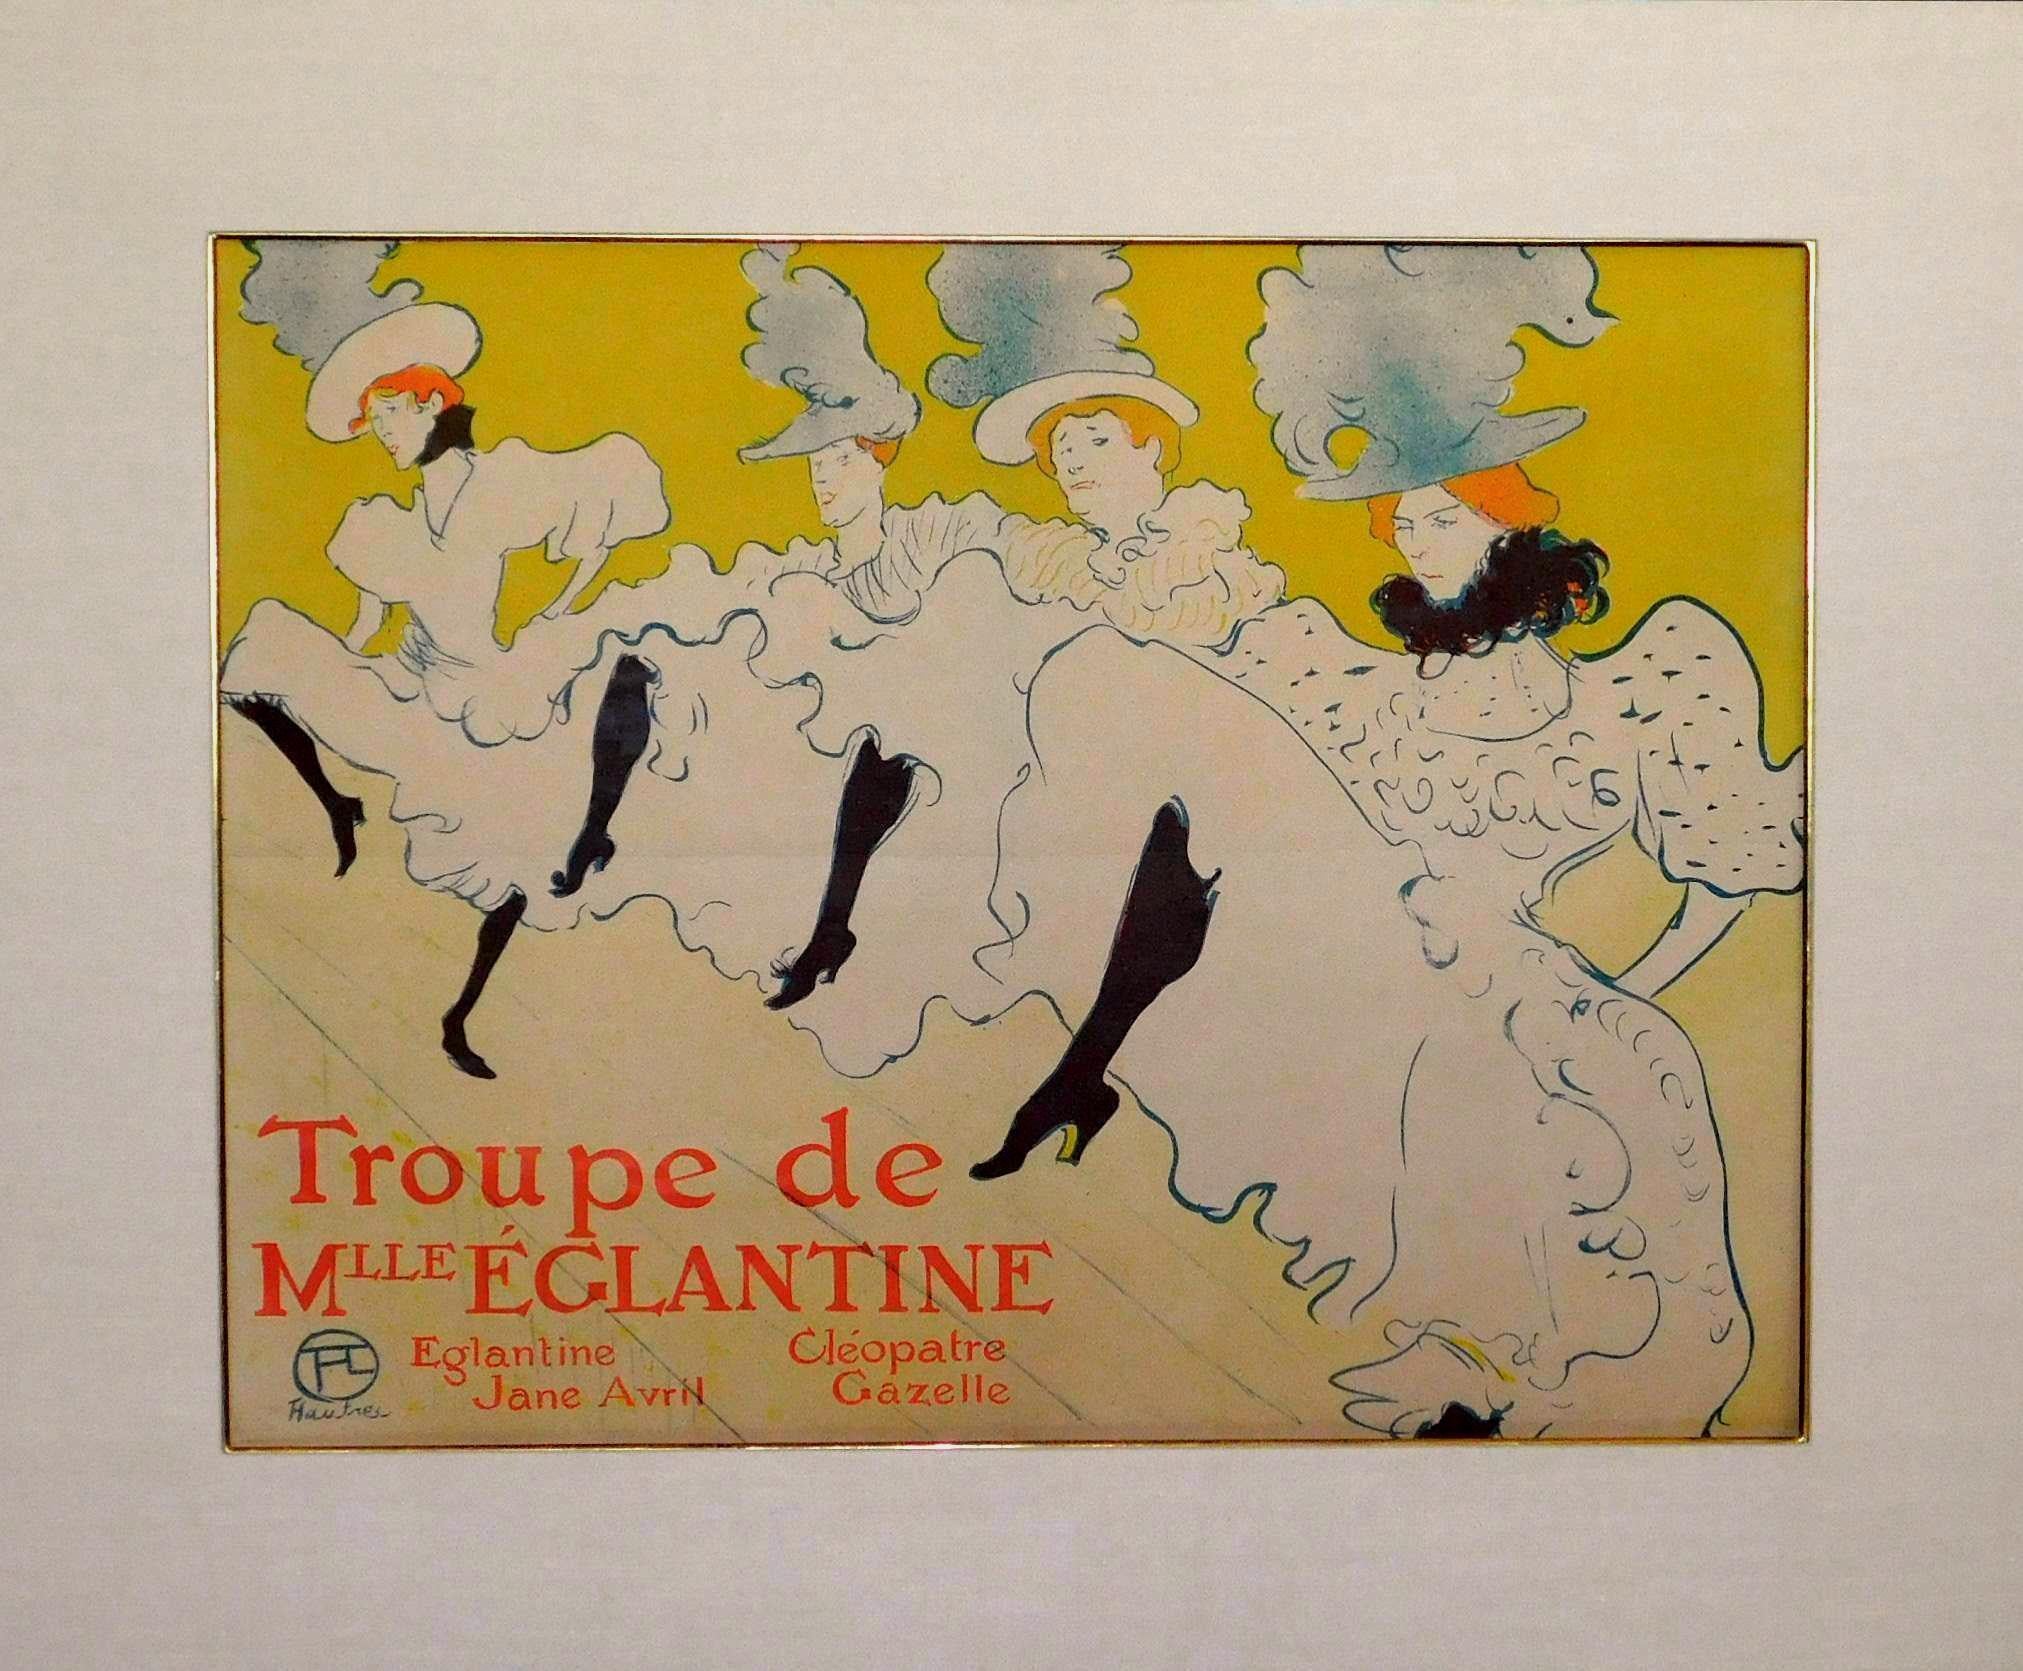 Henri de Toulouse-Lautrec (français 1864-1901) lithographie (affiche) imprimée en trois couleurs sur papier vélin machine. Créé en 1895. Imprimé en 1896.
Taille de la feuille : 24